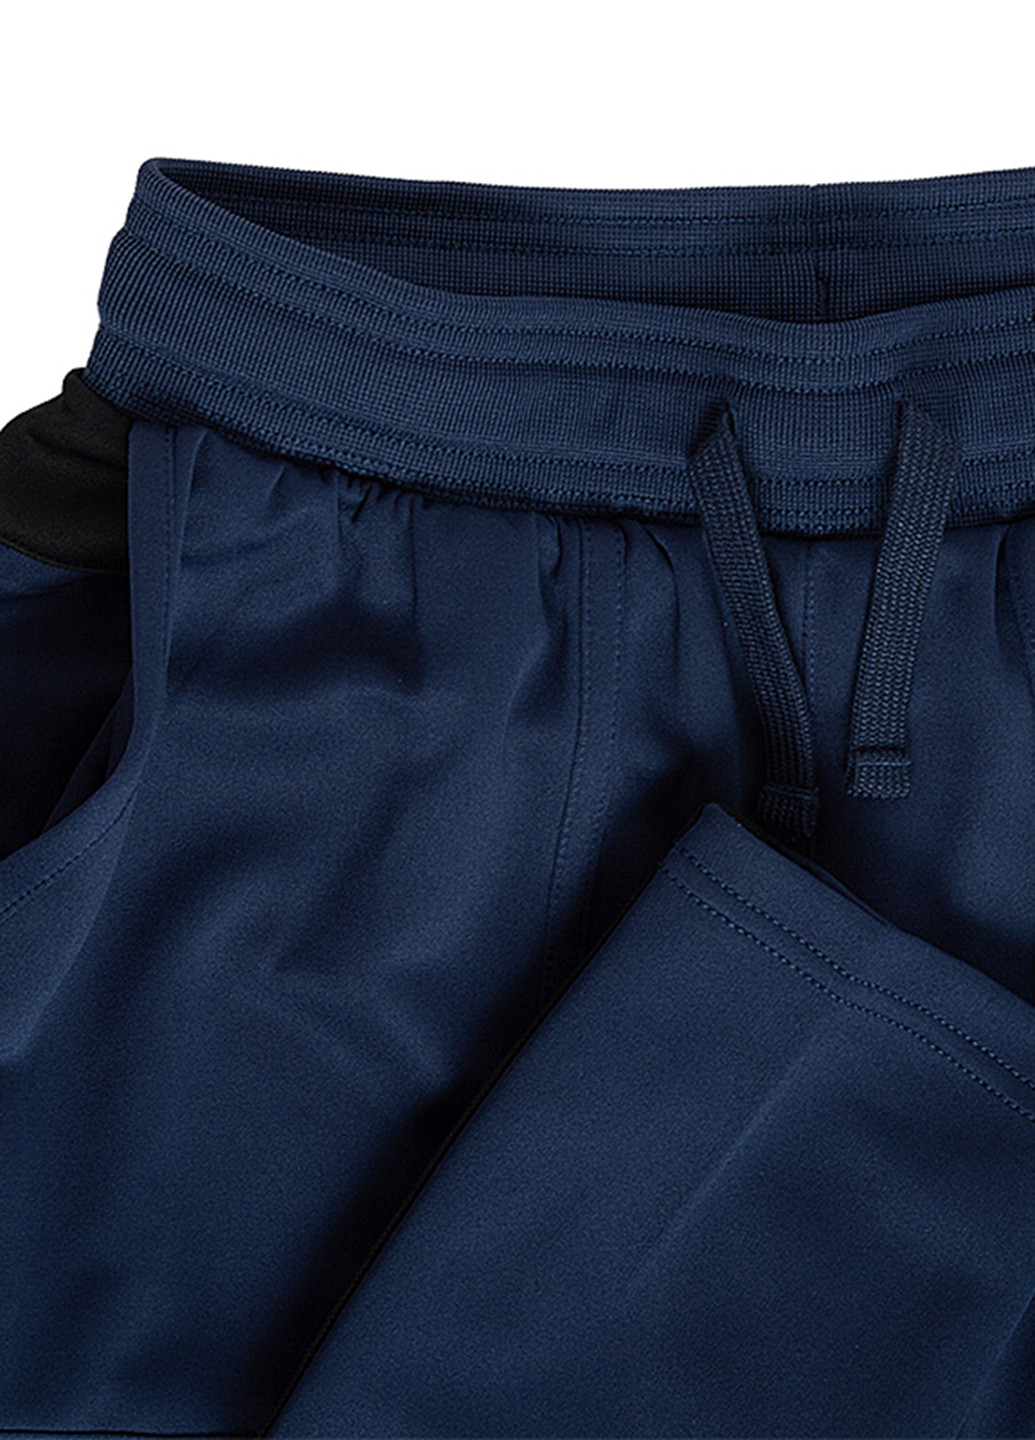 Темно-синій демісезонний костюм (олімпійка, брюки) брючний Nike Nike U NSW AIR TRACKSUIT